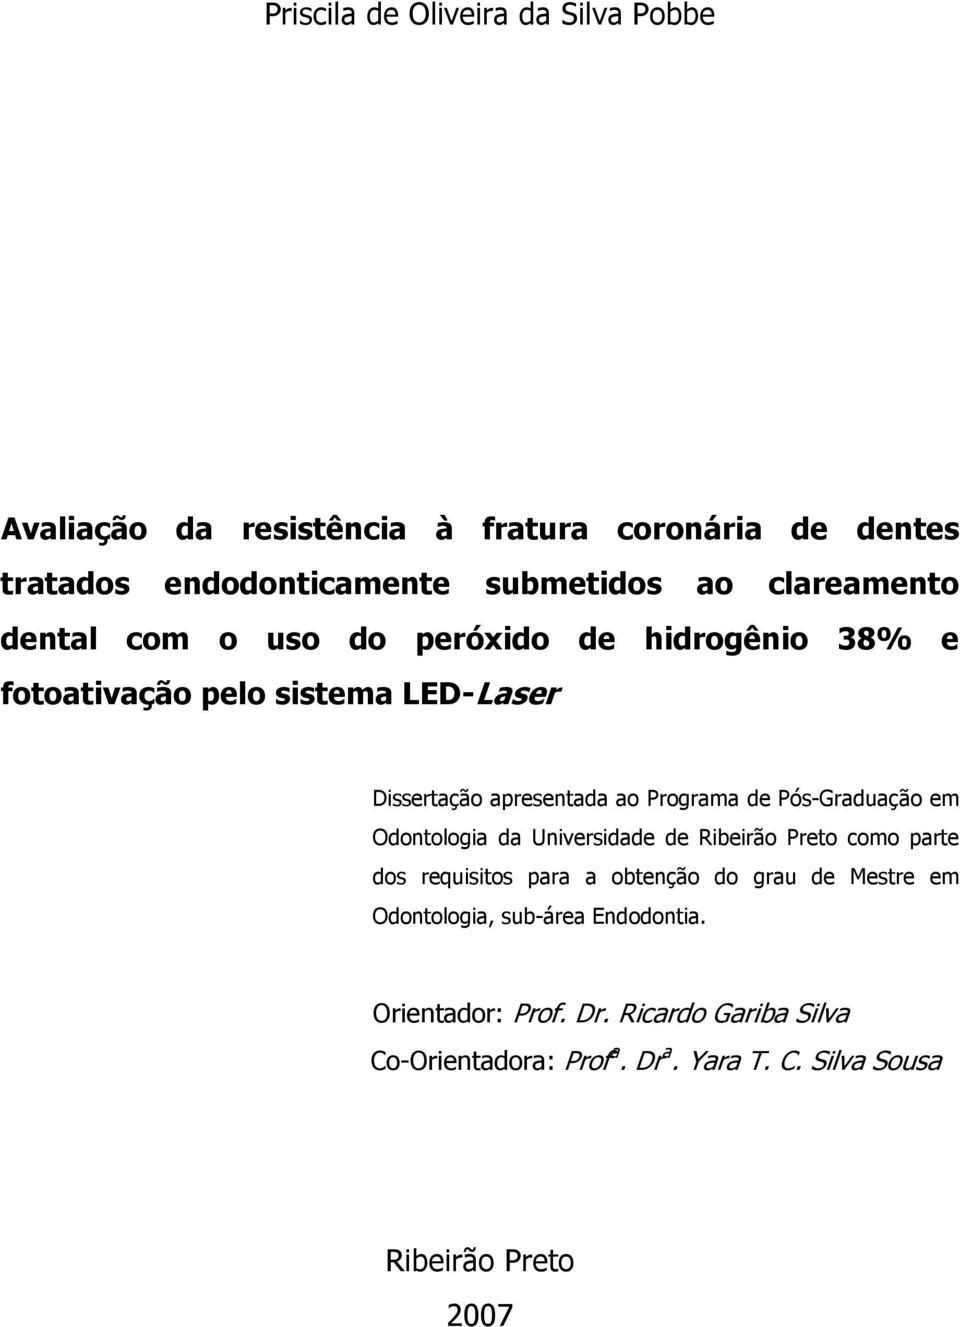 Pós-Graduação em Odontologia da Universidade de Ribeirão Preto como parte dos requisitos para a obtenção do grau de Mestre em